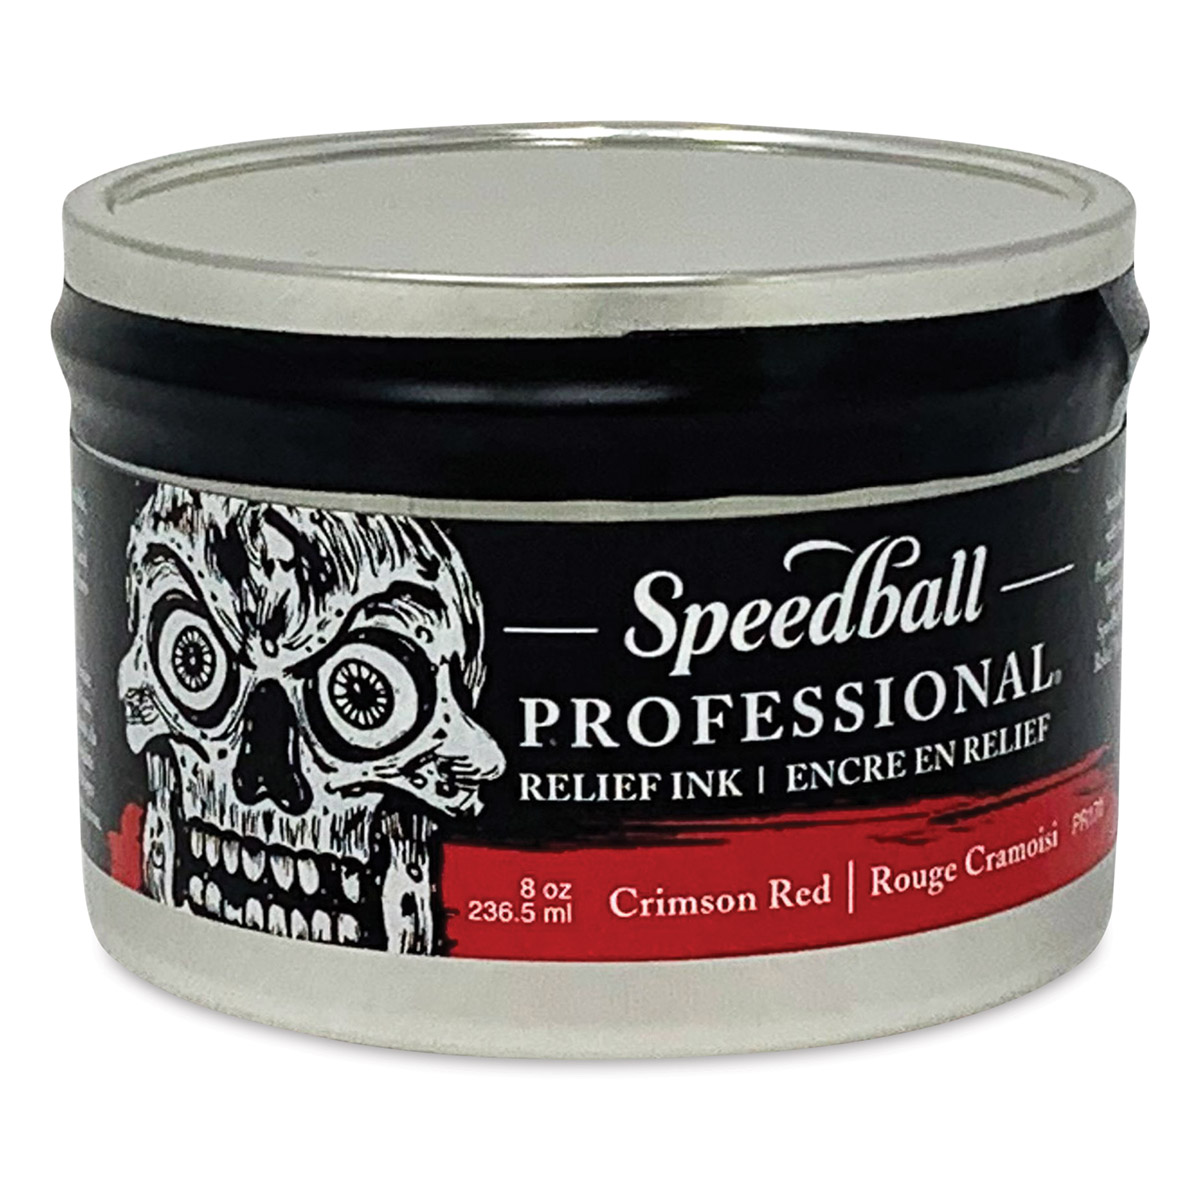 Professional® Relief Inks - Speedball Art